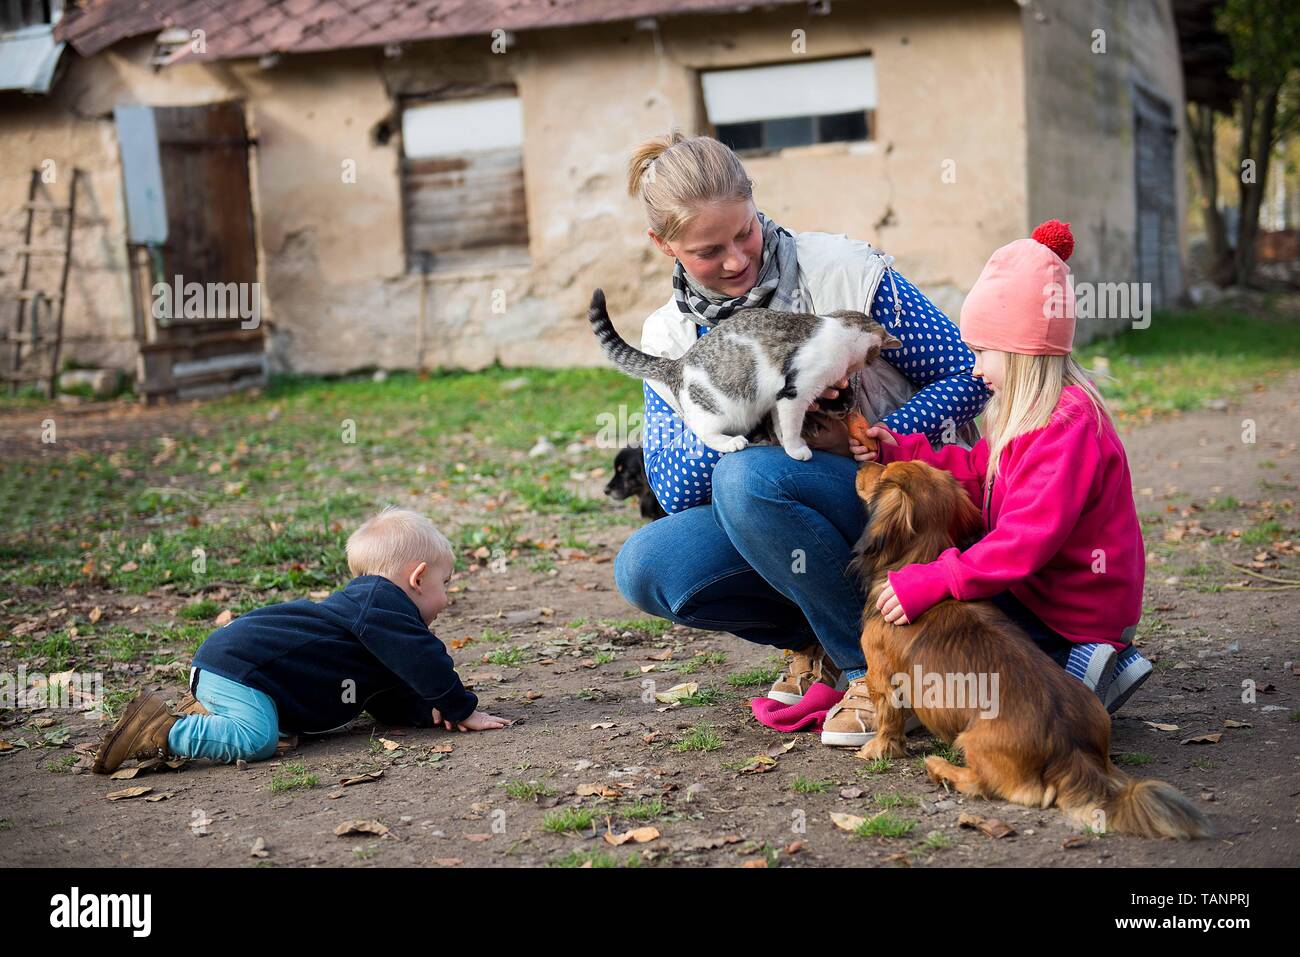 La mamma gioca con i suoi bambini e alimenta gli animali domestici nel cortile della fattoria Foto Stock